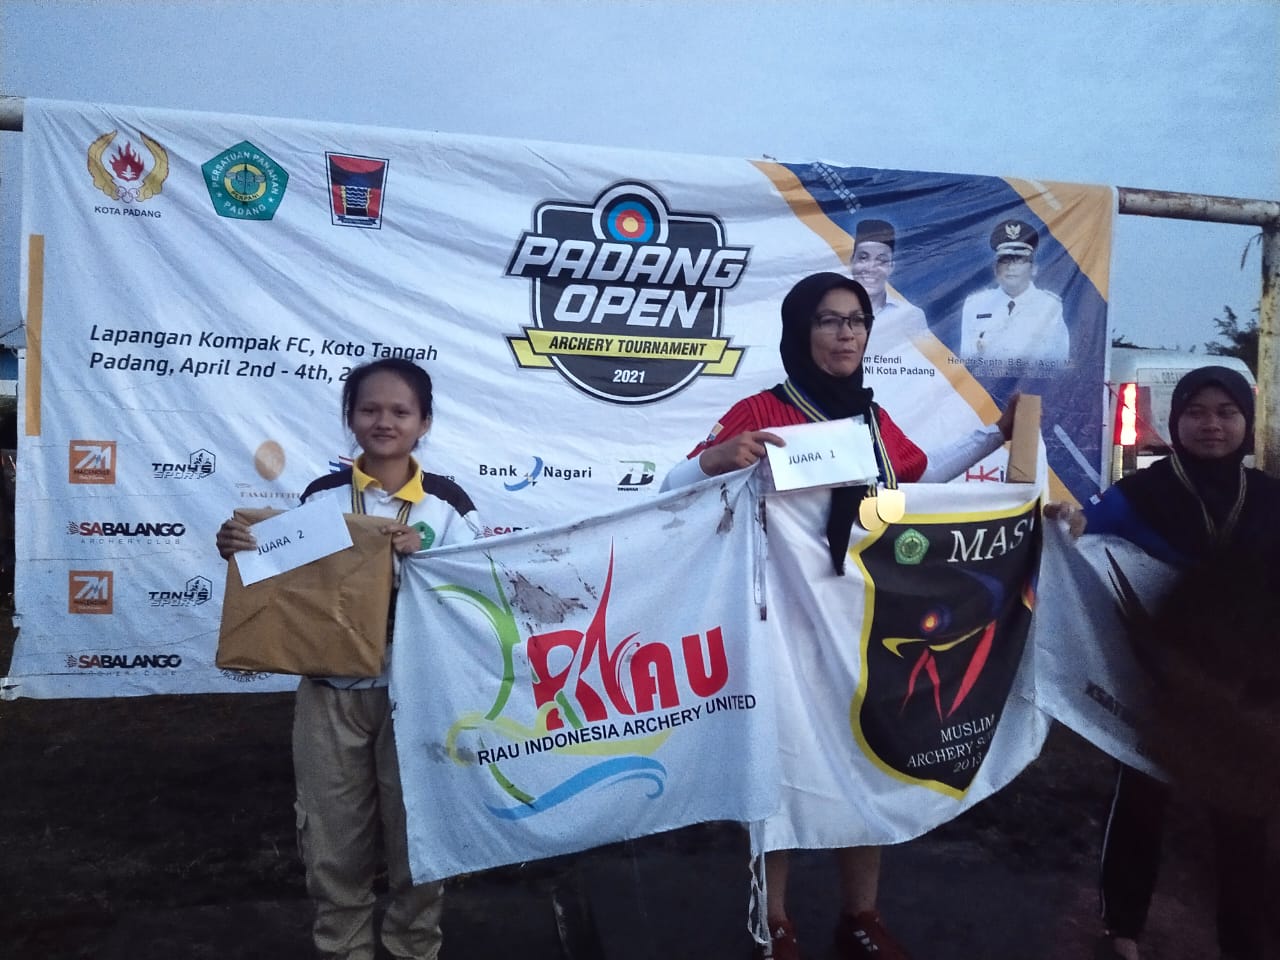 Mahasiswi Unilak Raih Medali Perak Padang Open Archery Tournament